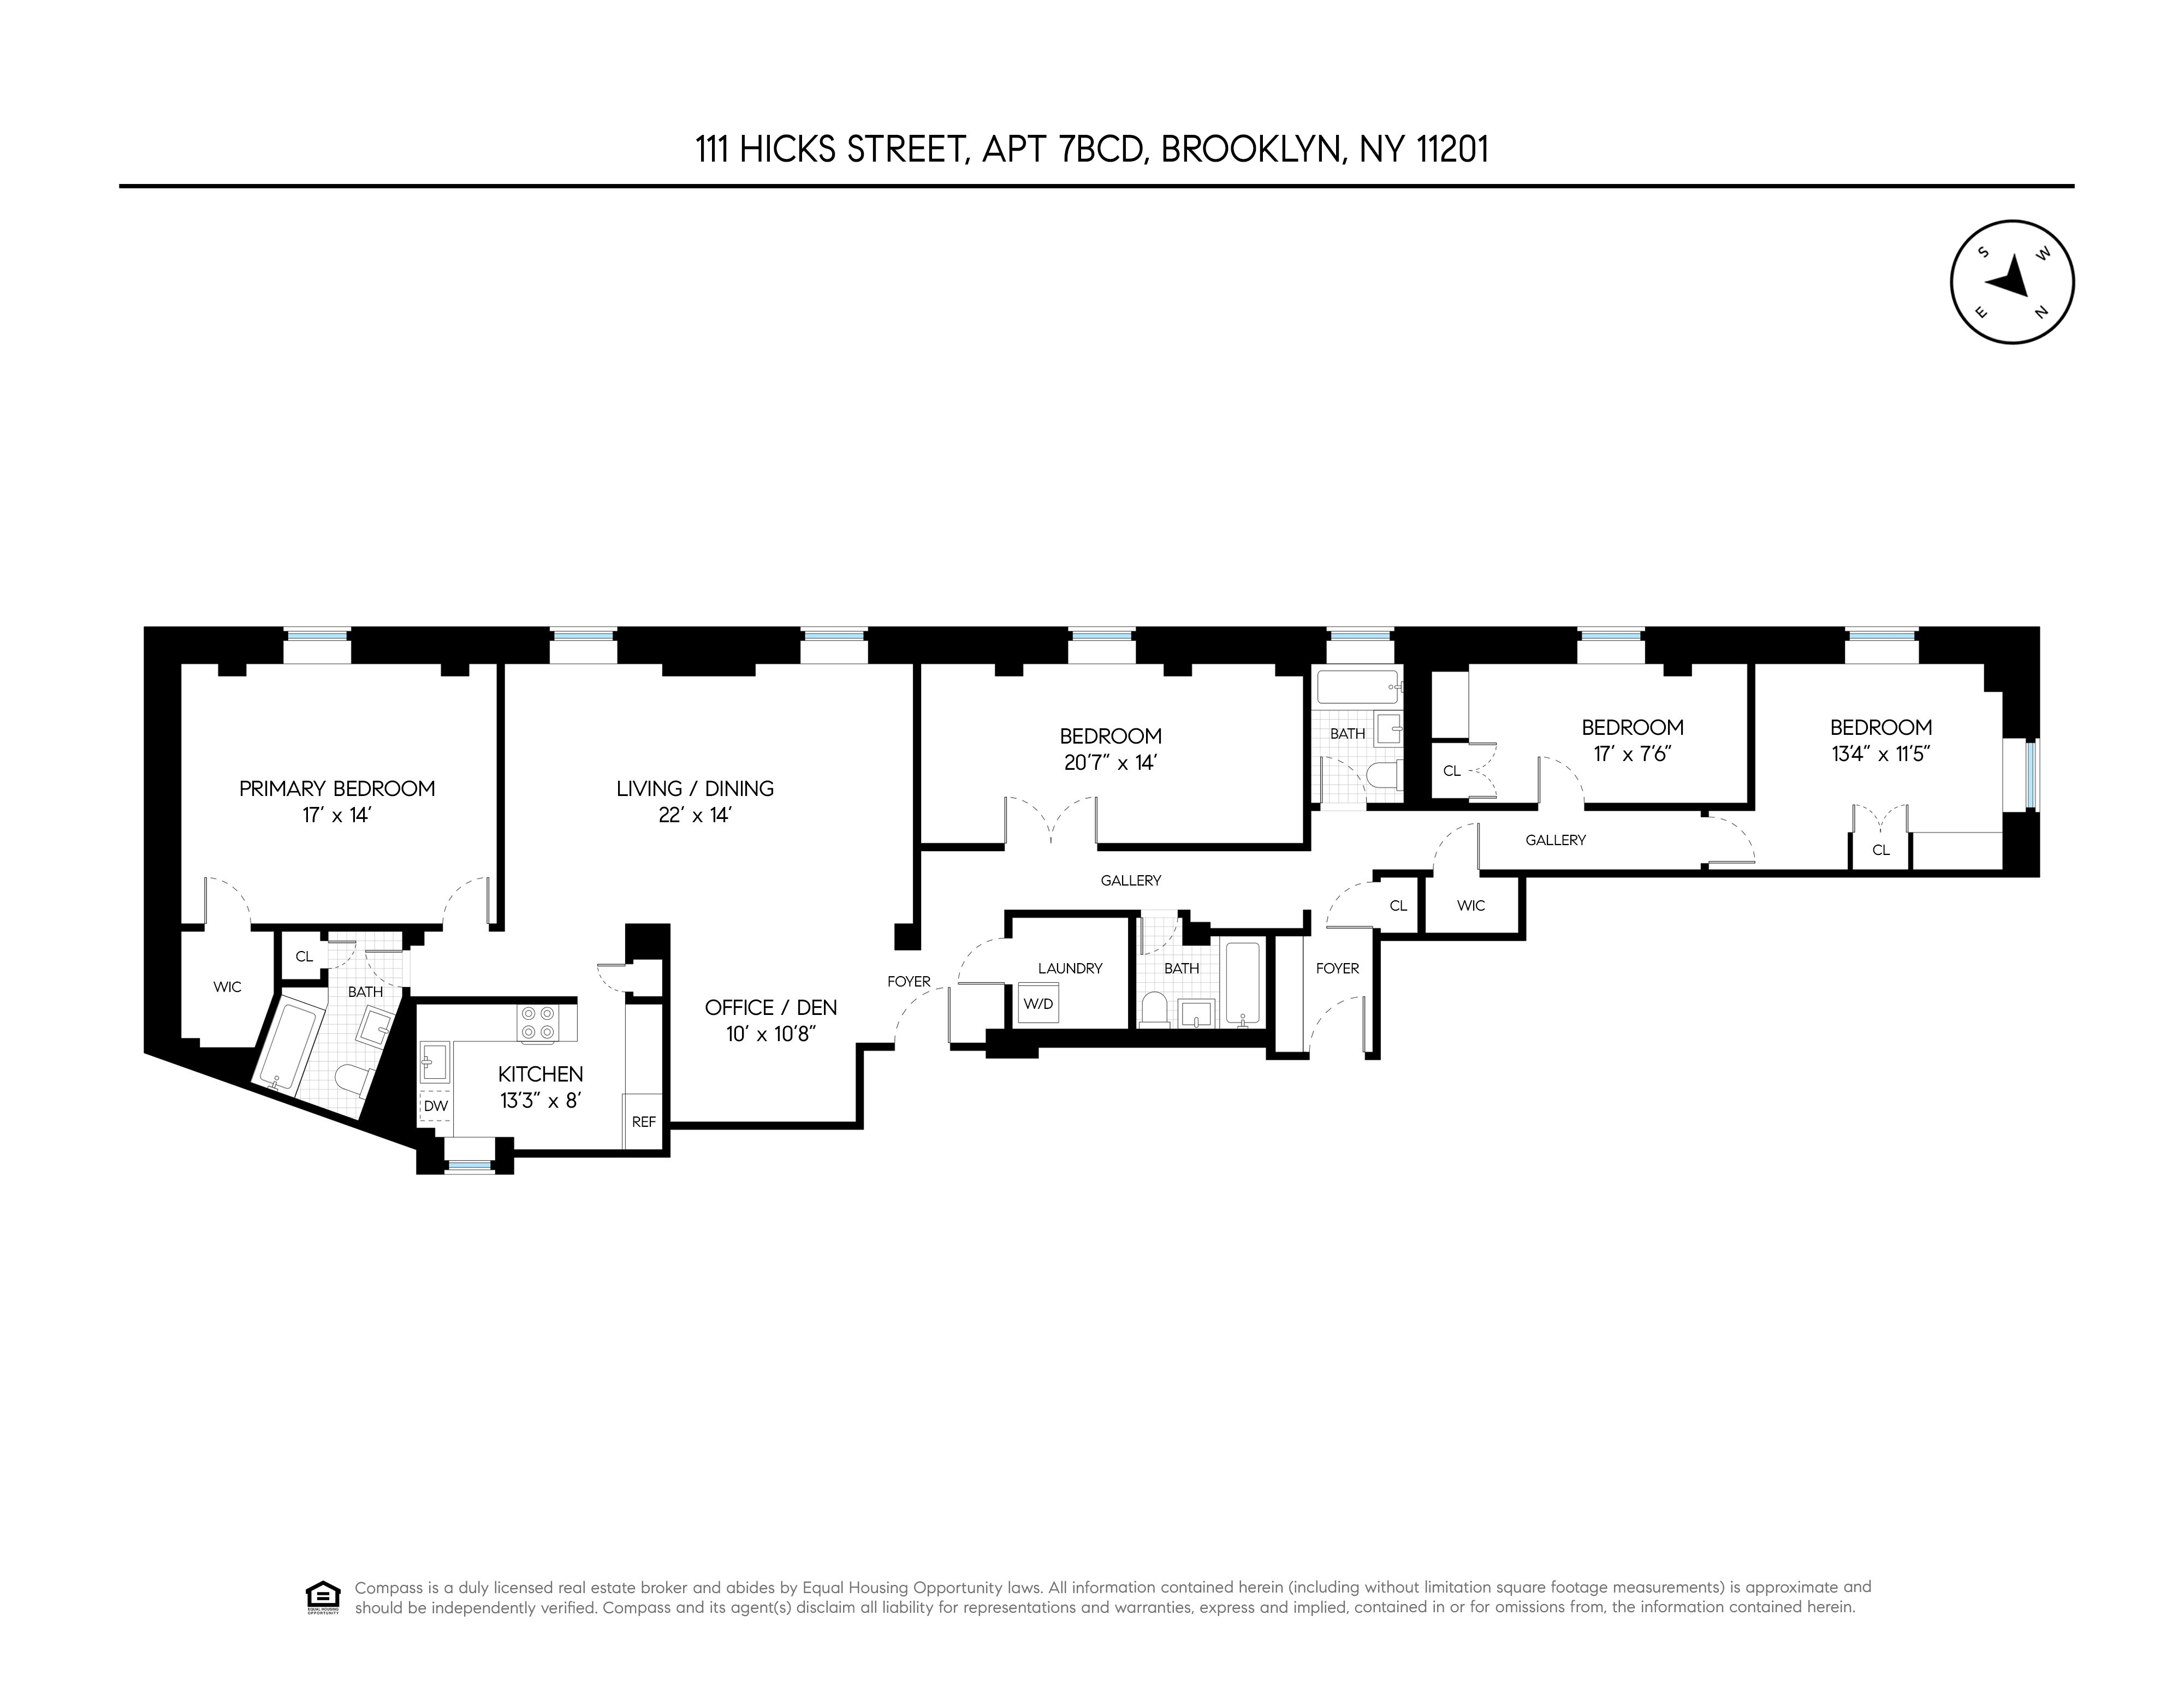 Floorplan for 111 Hicks Street, 7BCD